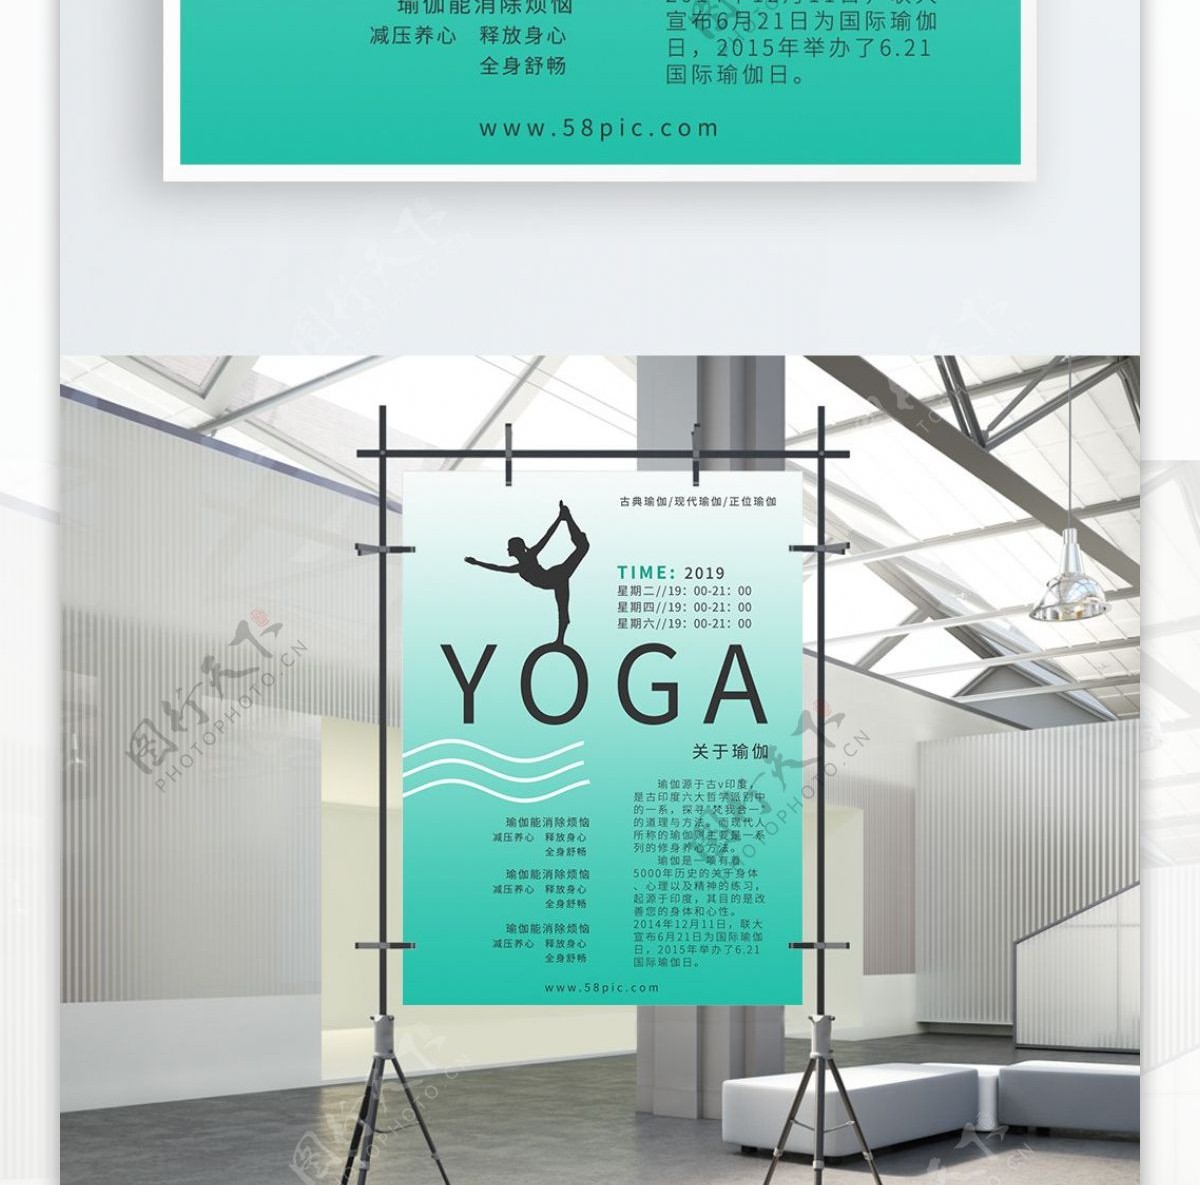 原创小清新瑜伽商业海报